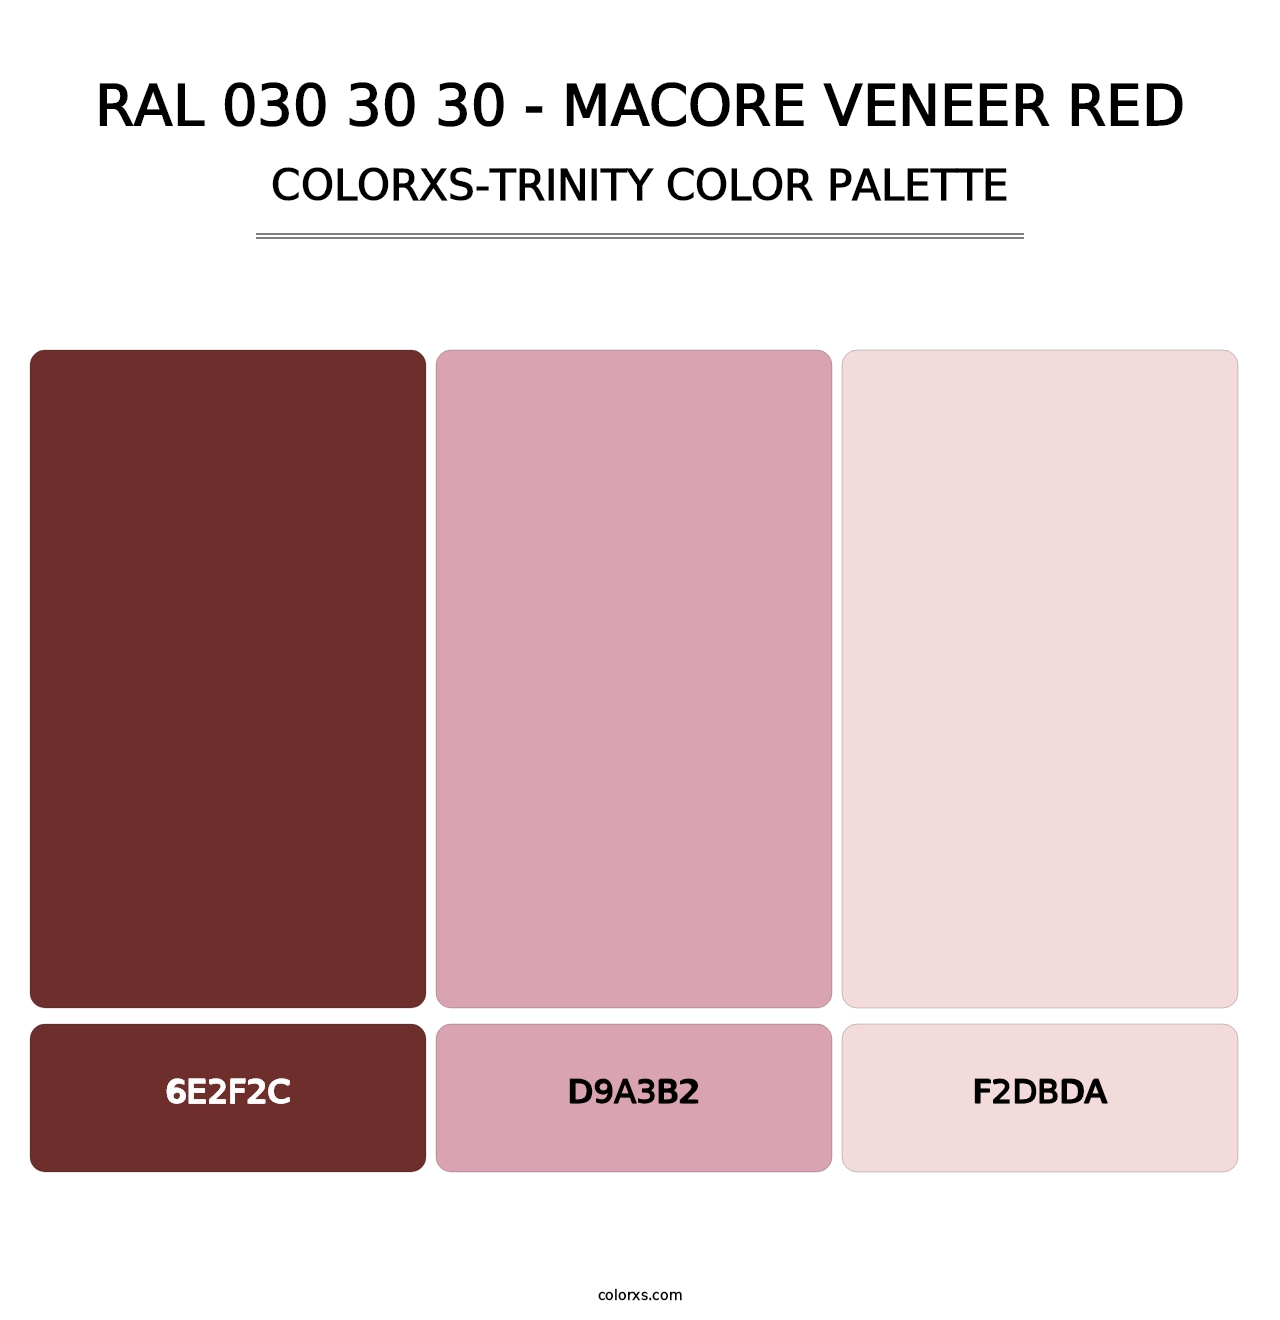 RAL 030 30 30 - Macore Veneer Red - Colorxs Trinity Palette